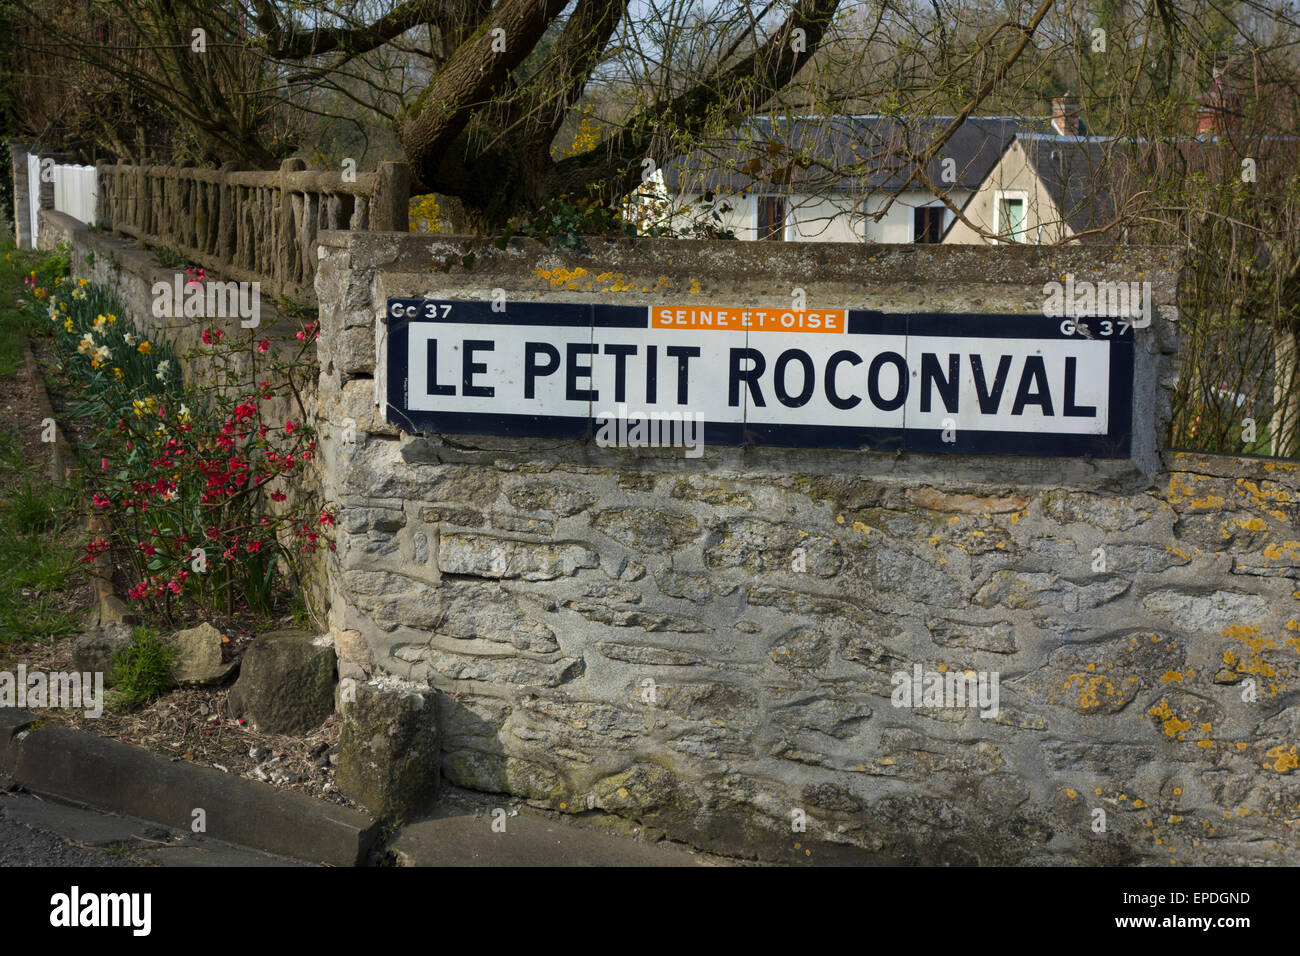 Alten melden für Le Petit Roconval (einem Ortsteil von Amenucourt), Val-d ' Oise, Frankreich; Zeichen zeigt veraltete Seine-et-Oise Abteilung Stockfoto